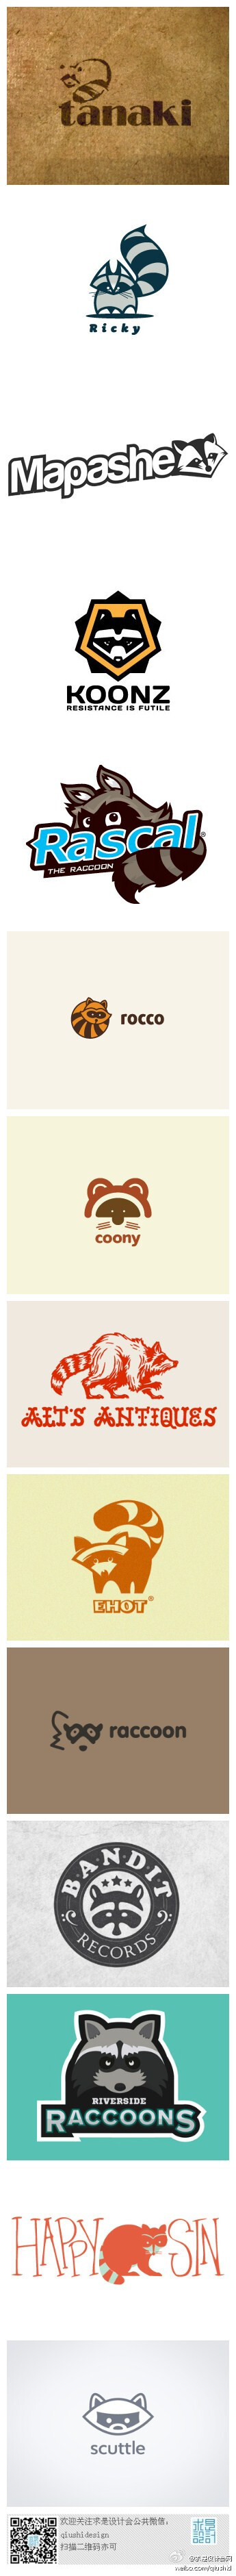 @求是设计会网 ： #求是爱设计#标志设计元素运用实例：浣熊